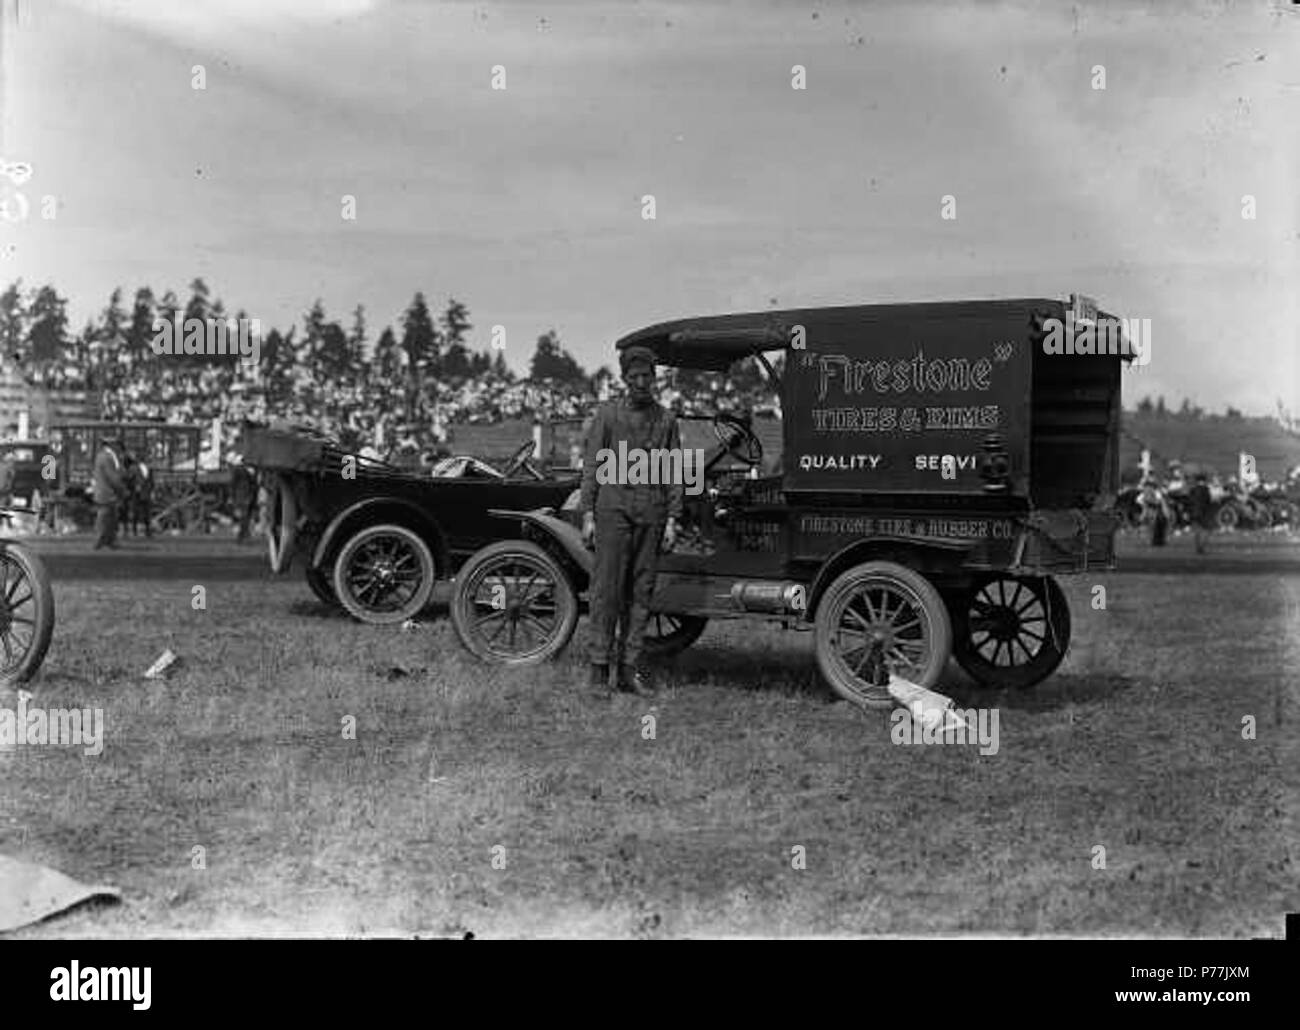 Inglés: camión de servicio de neumáticos Firestone en Tacoma Speedway circa  1915. La ubicación era el Tacoma Speedway, a unos siete kilómetros de  Tacoma. La ocasión fue probablemente el auto tres razas